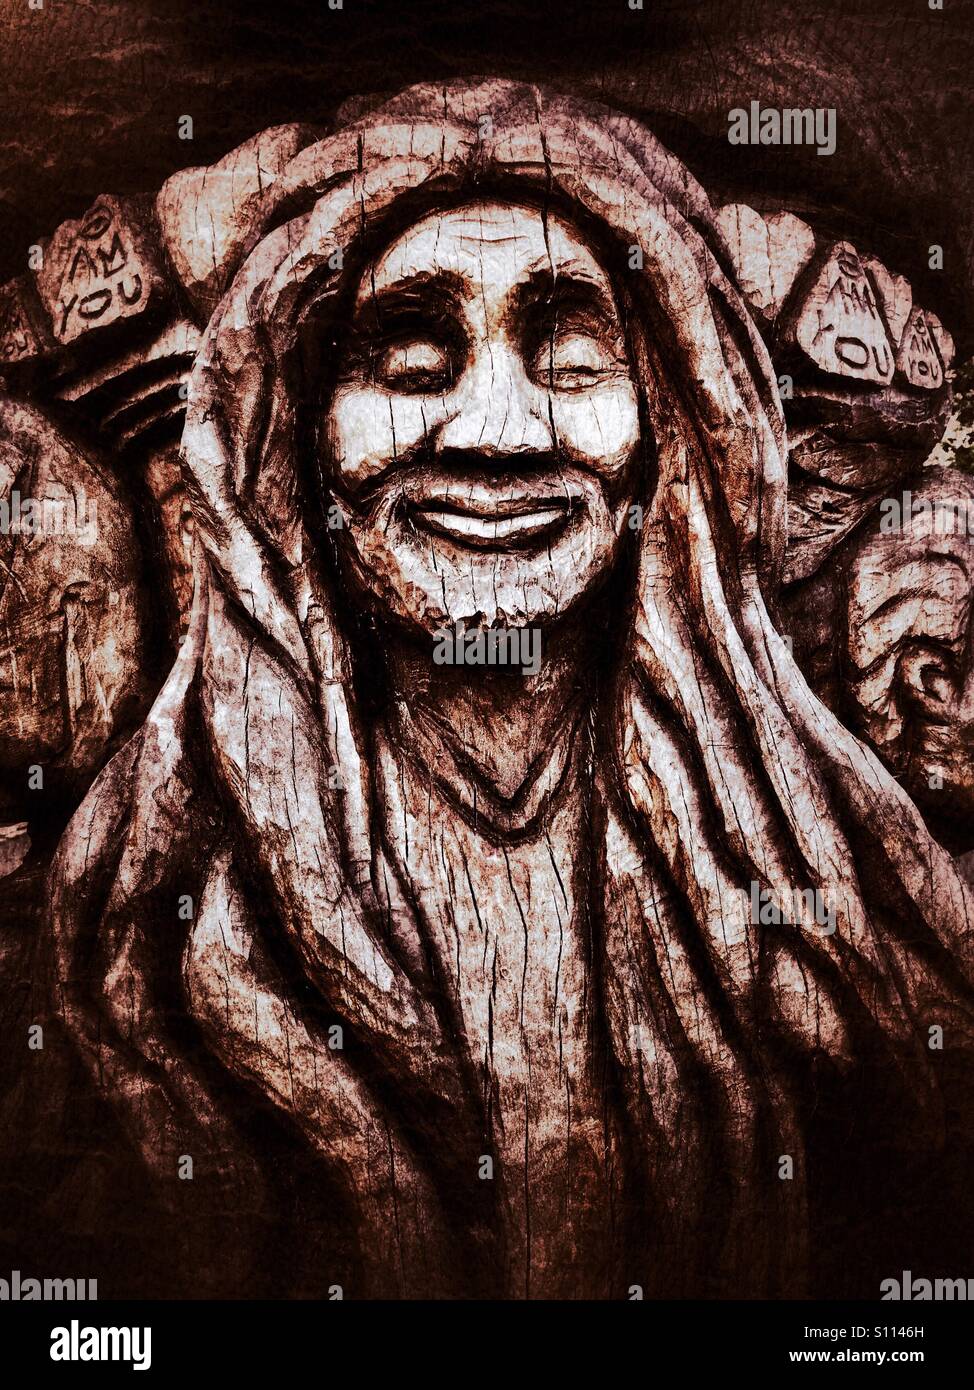 De cara sonriente hombre dreadlocked tranquilo en una escultura de madera tallada en Peckham Rye park Foto de stock